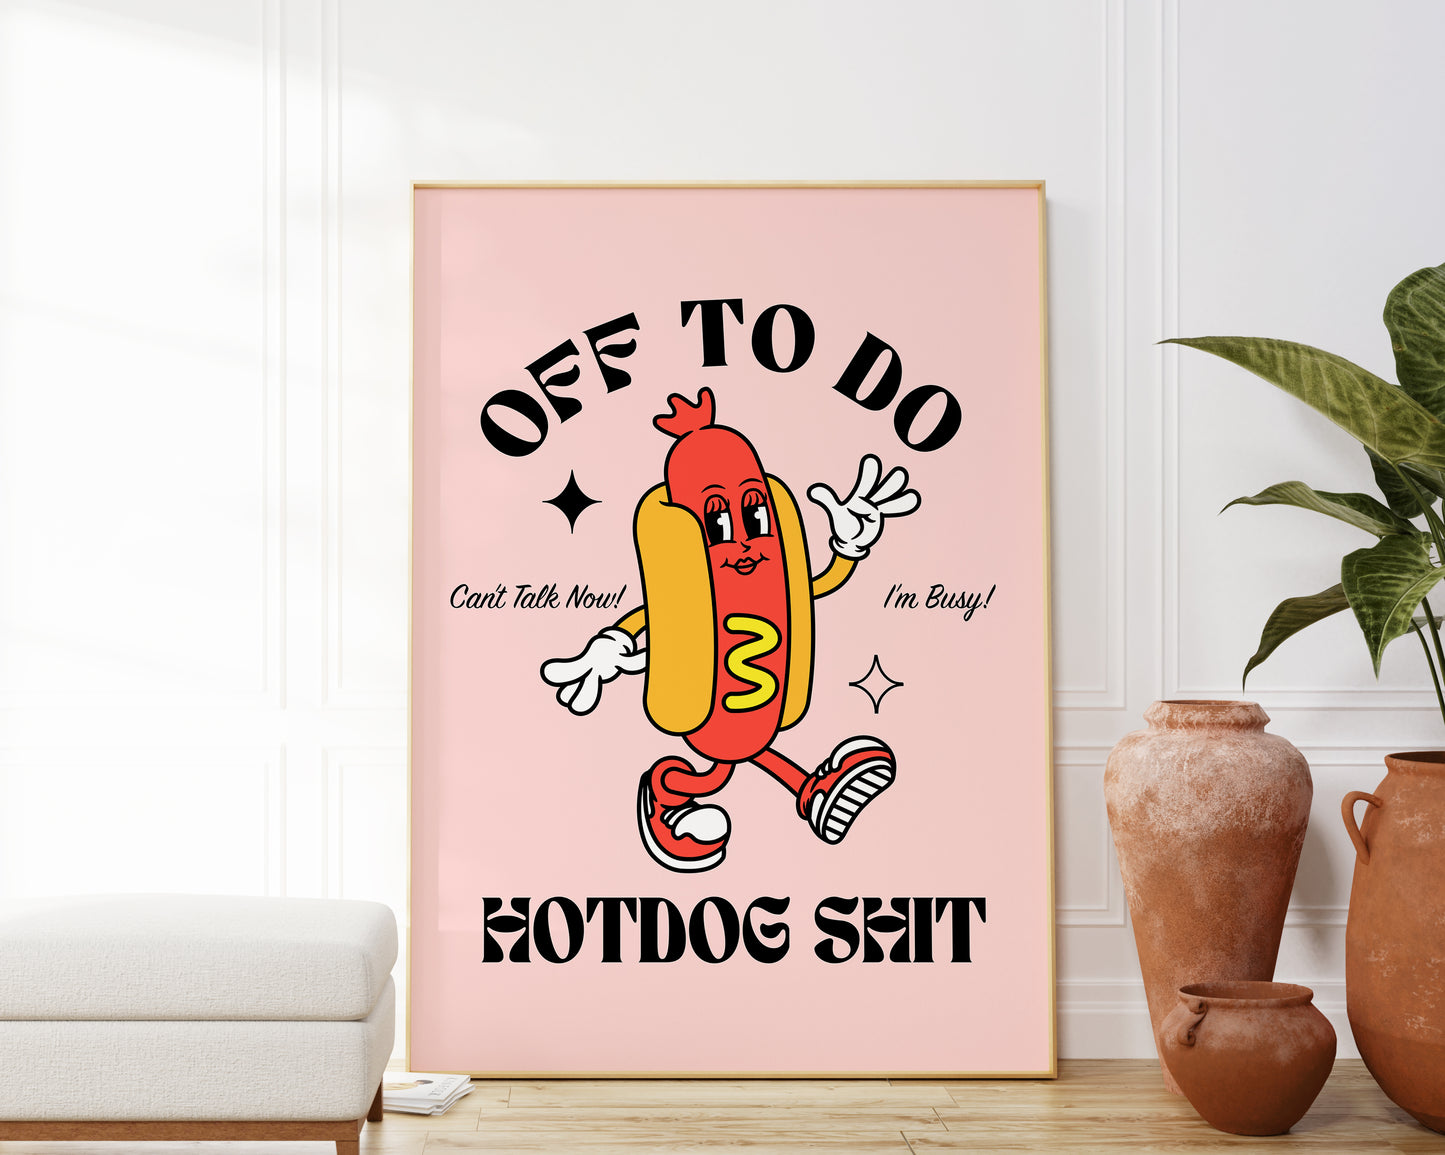 Off To Do Hotdog Shit